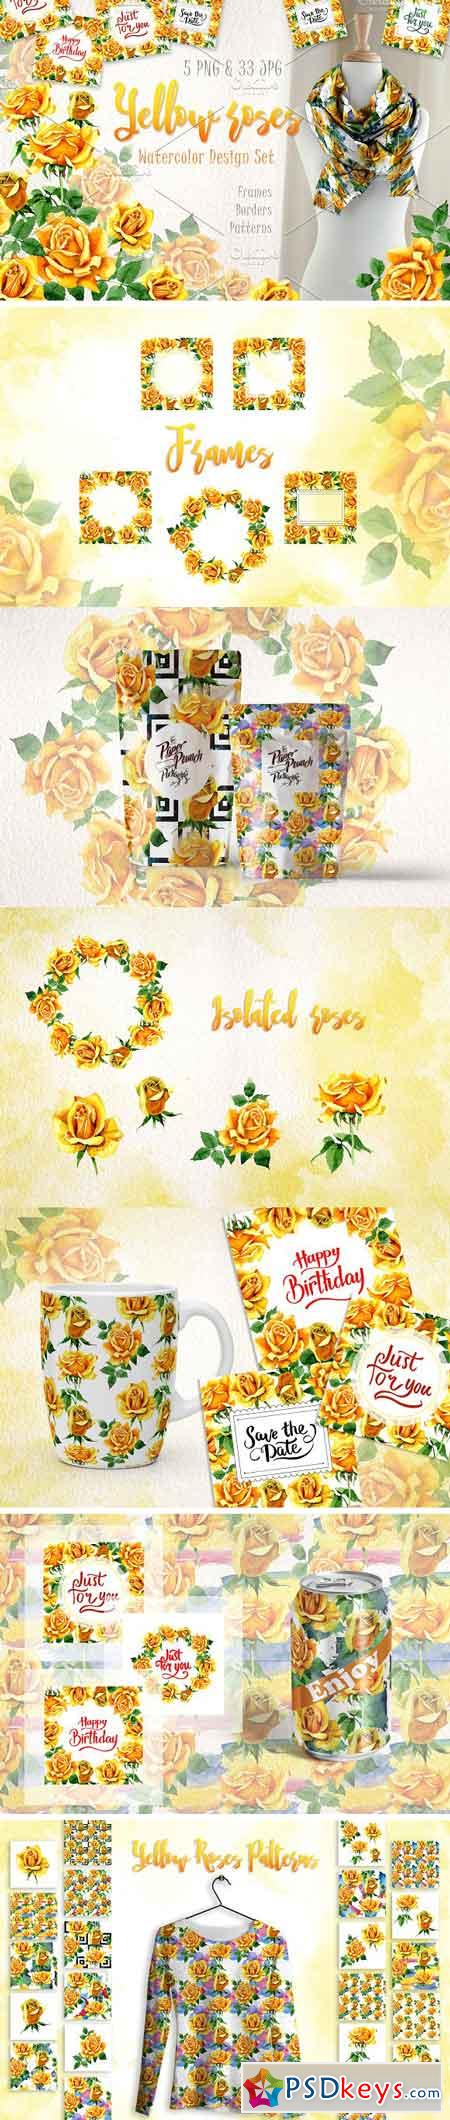 Yellow Roses PNG watercolor set 2888879